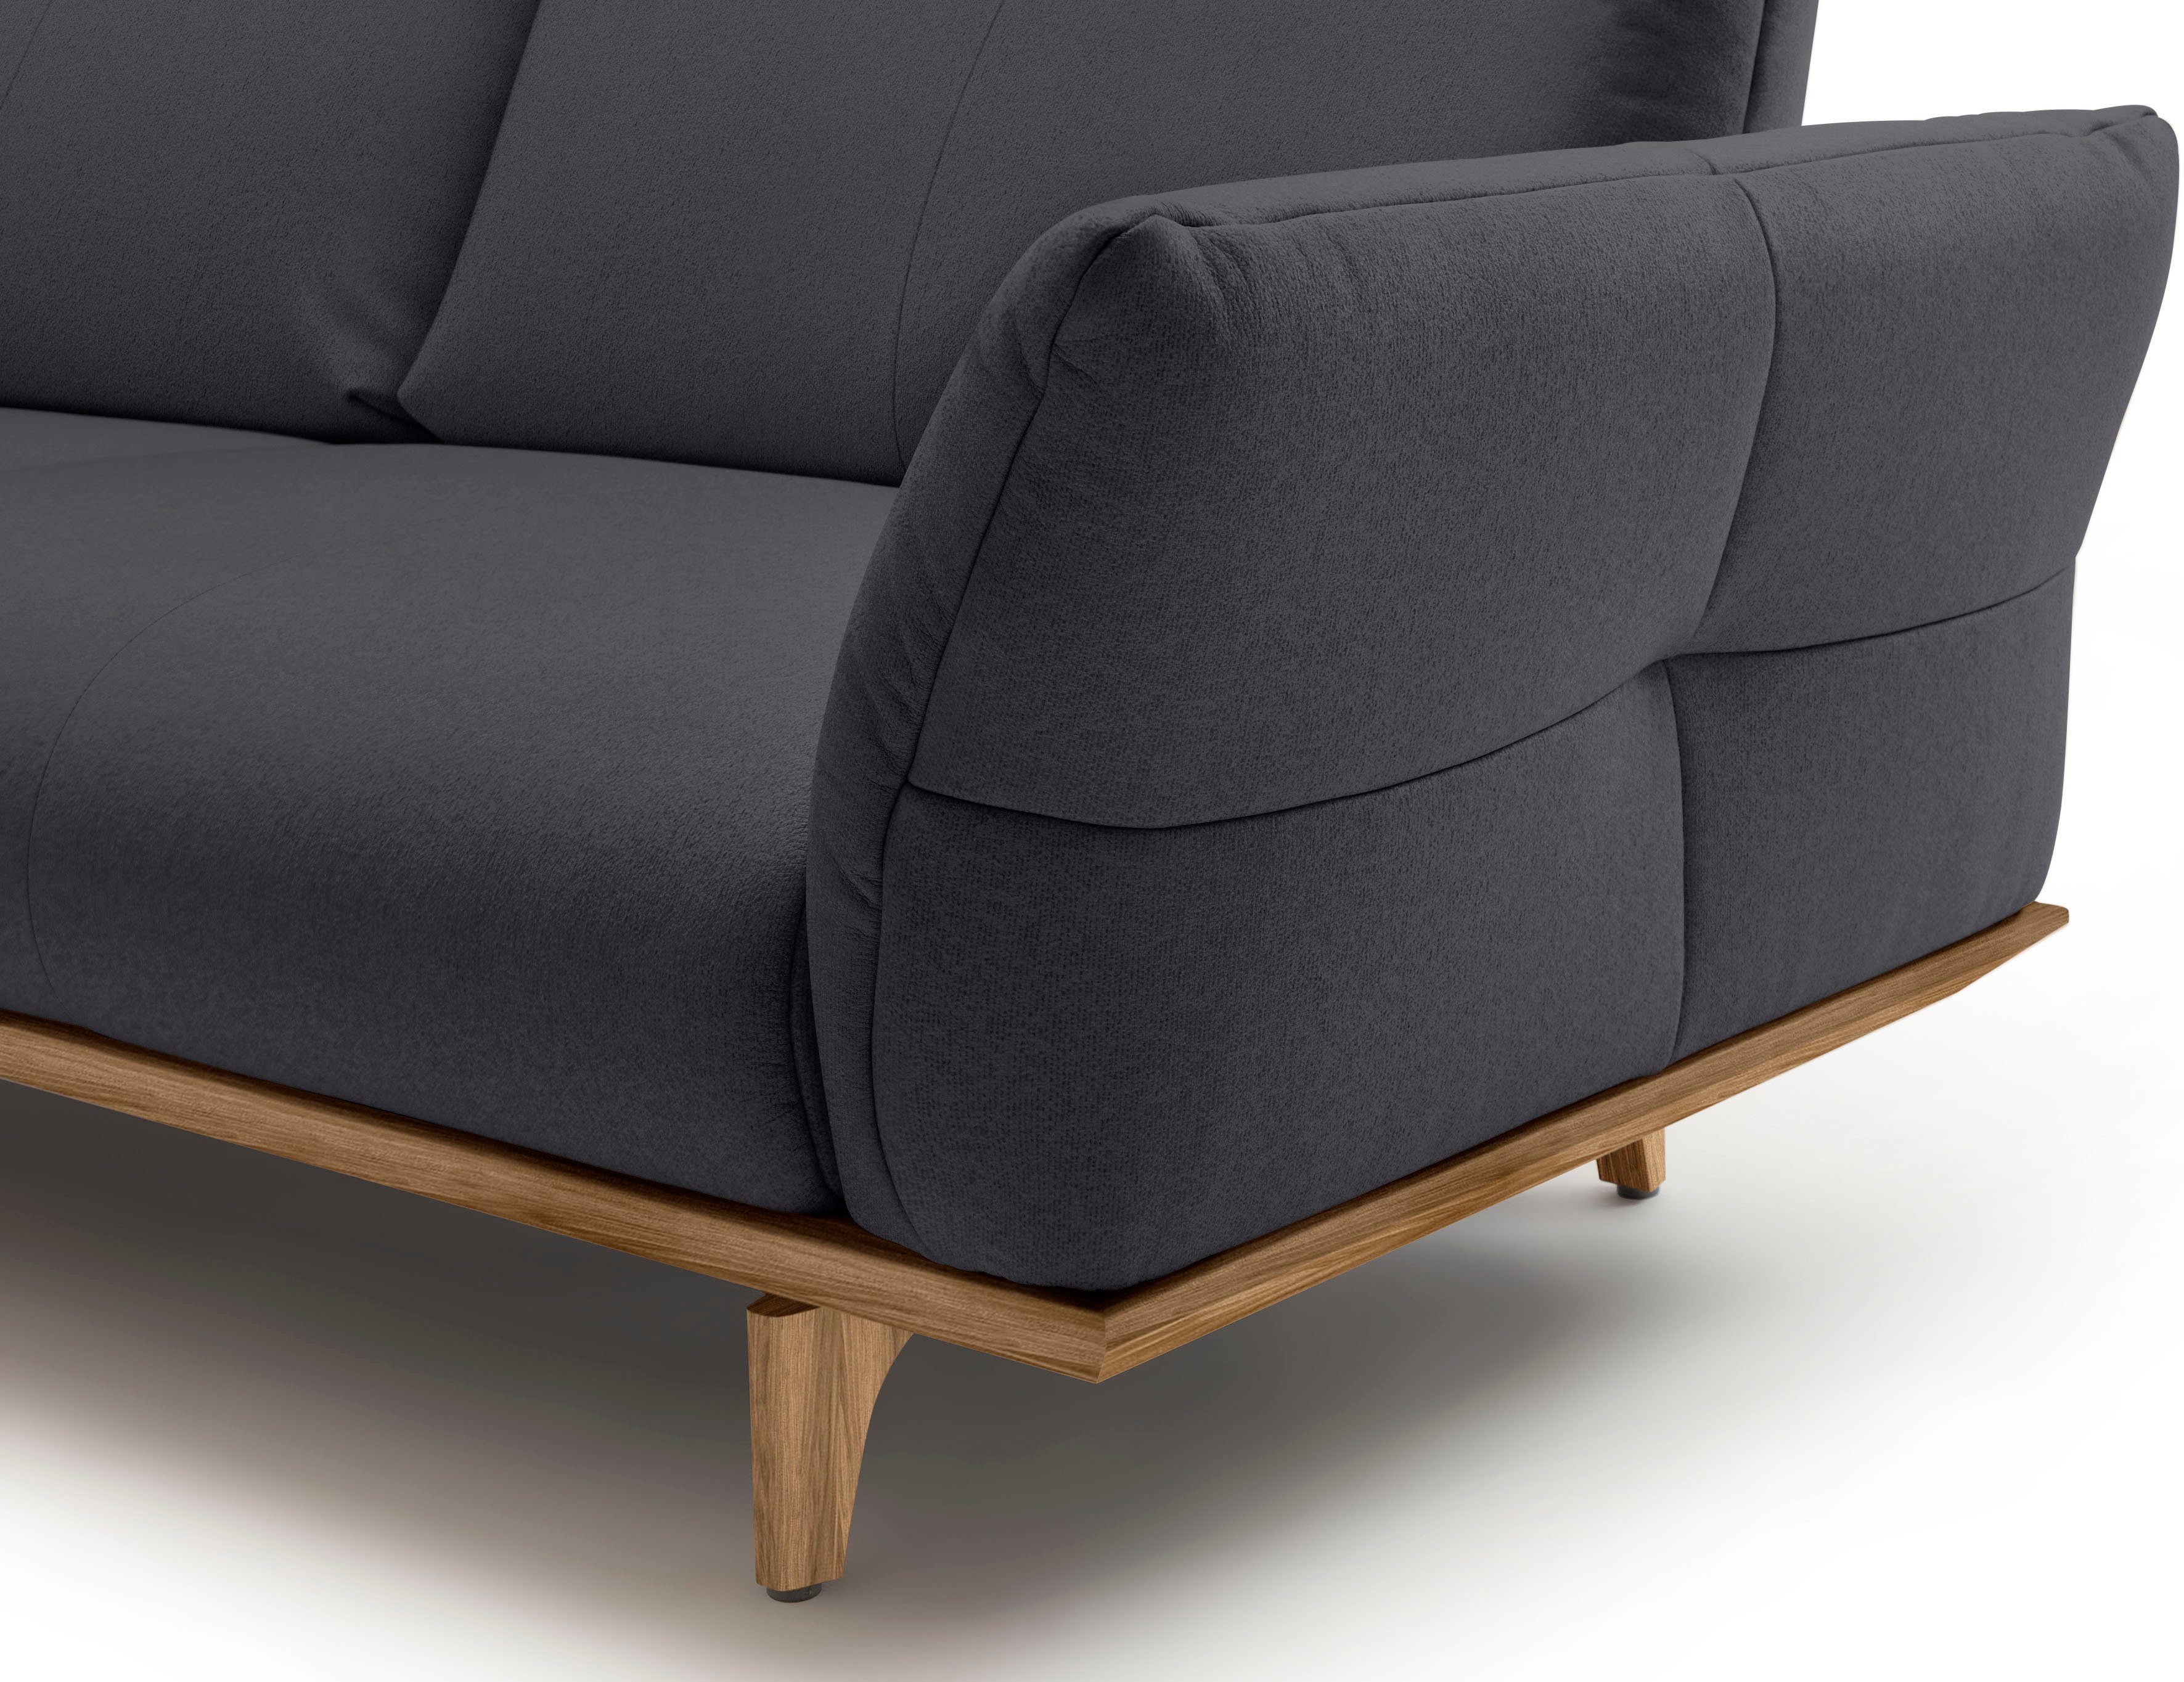 3-Sitzer sofa cm 208 Sockel Nussbaum, in hs.460, hülsta Füße Nussbaum, Breite